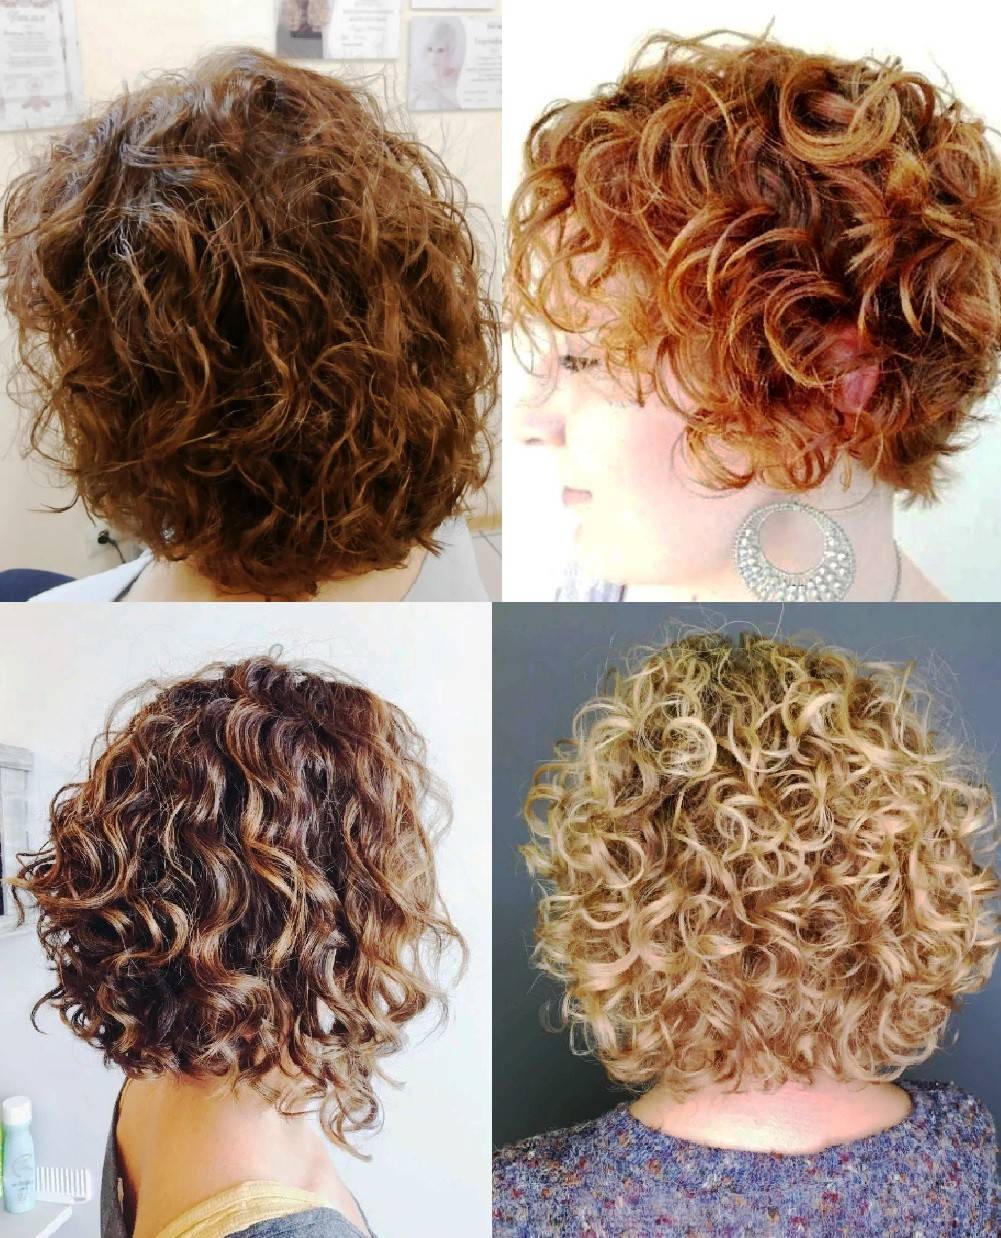 Карвинг волос - 125 фото долговременной укладки | портал для женщин womanchoice.net